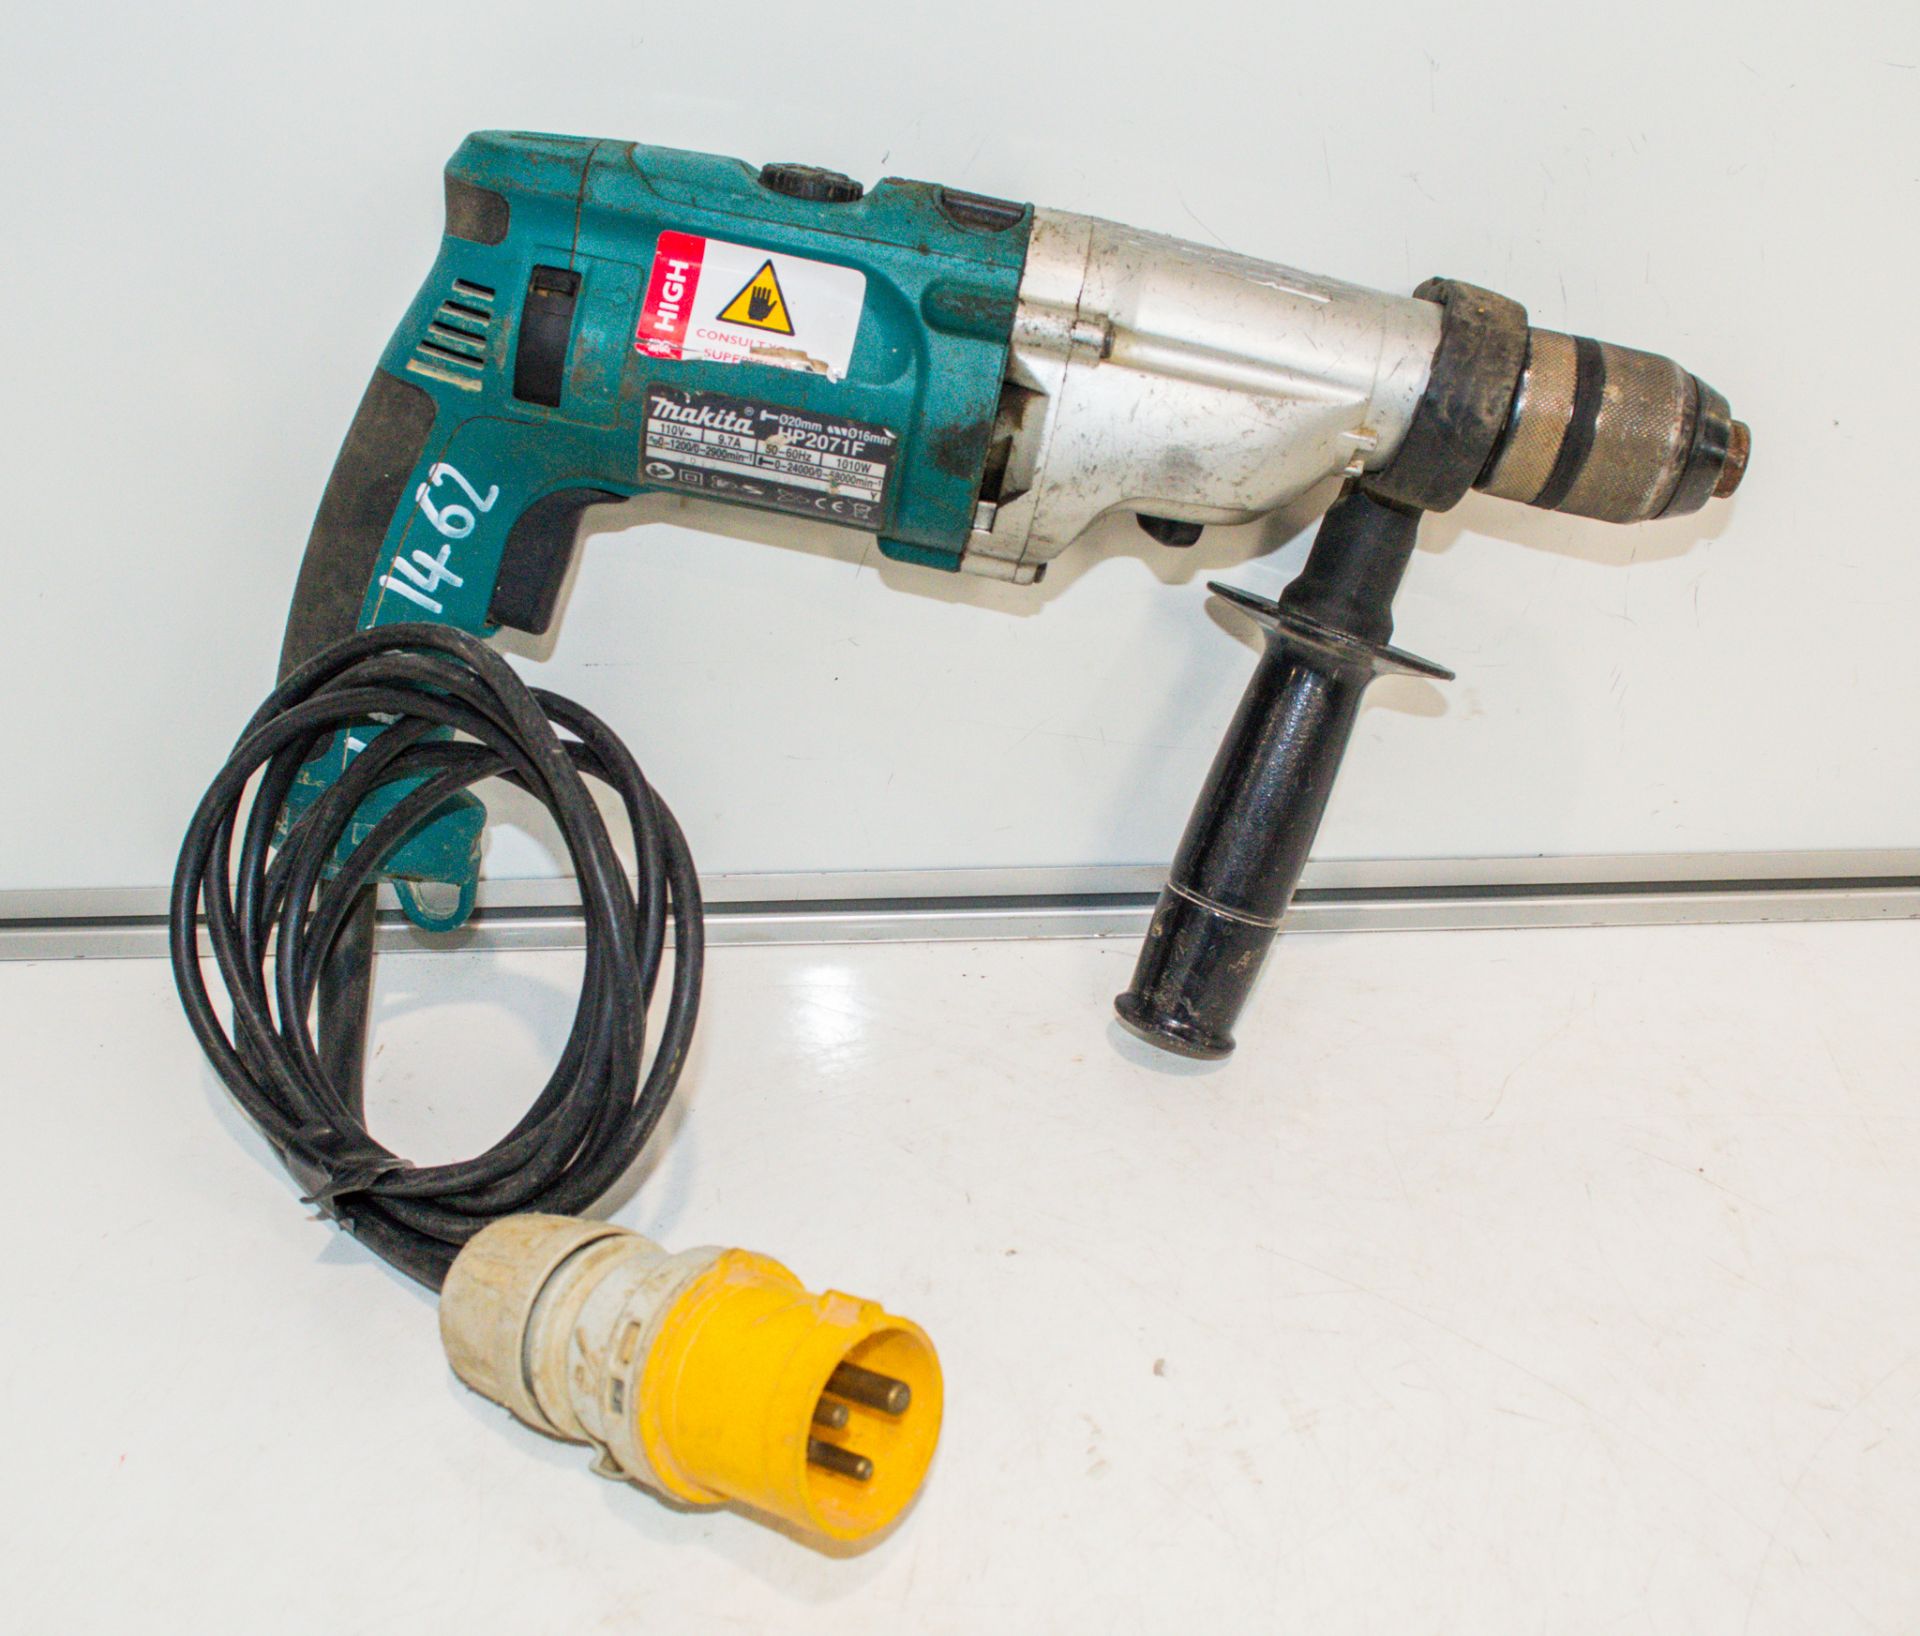 Makita HP2071F 110v rotary hammer drill 03011889